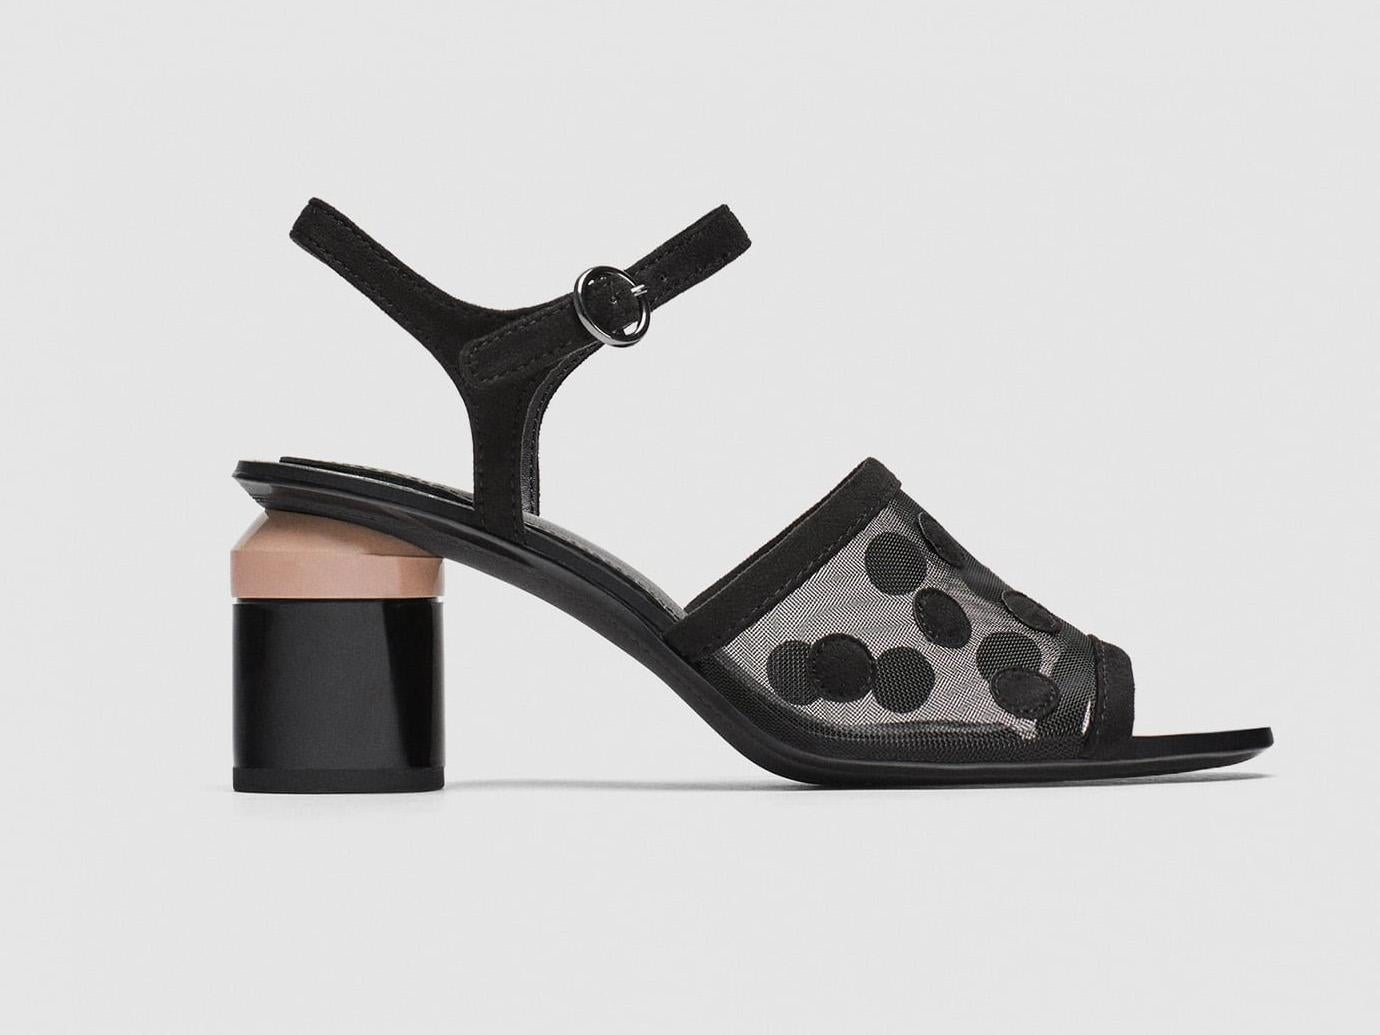 Mid-Heel Dotted Mesh Sandals, £39.99, Zara